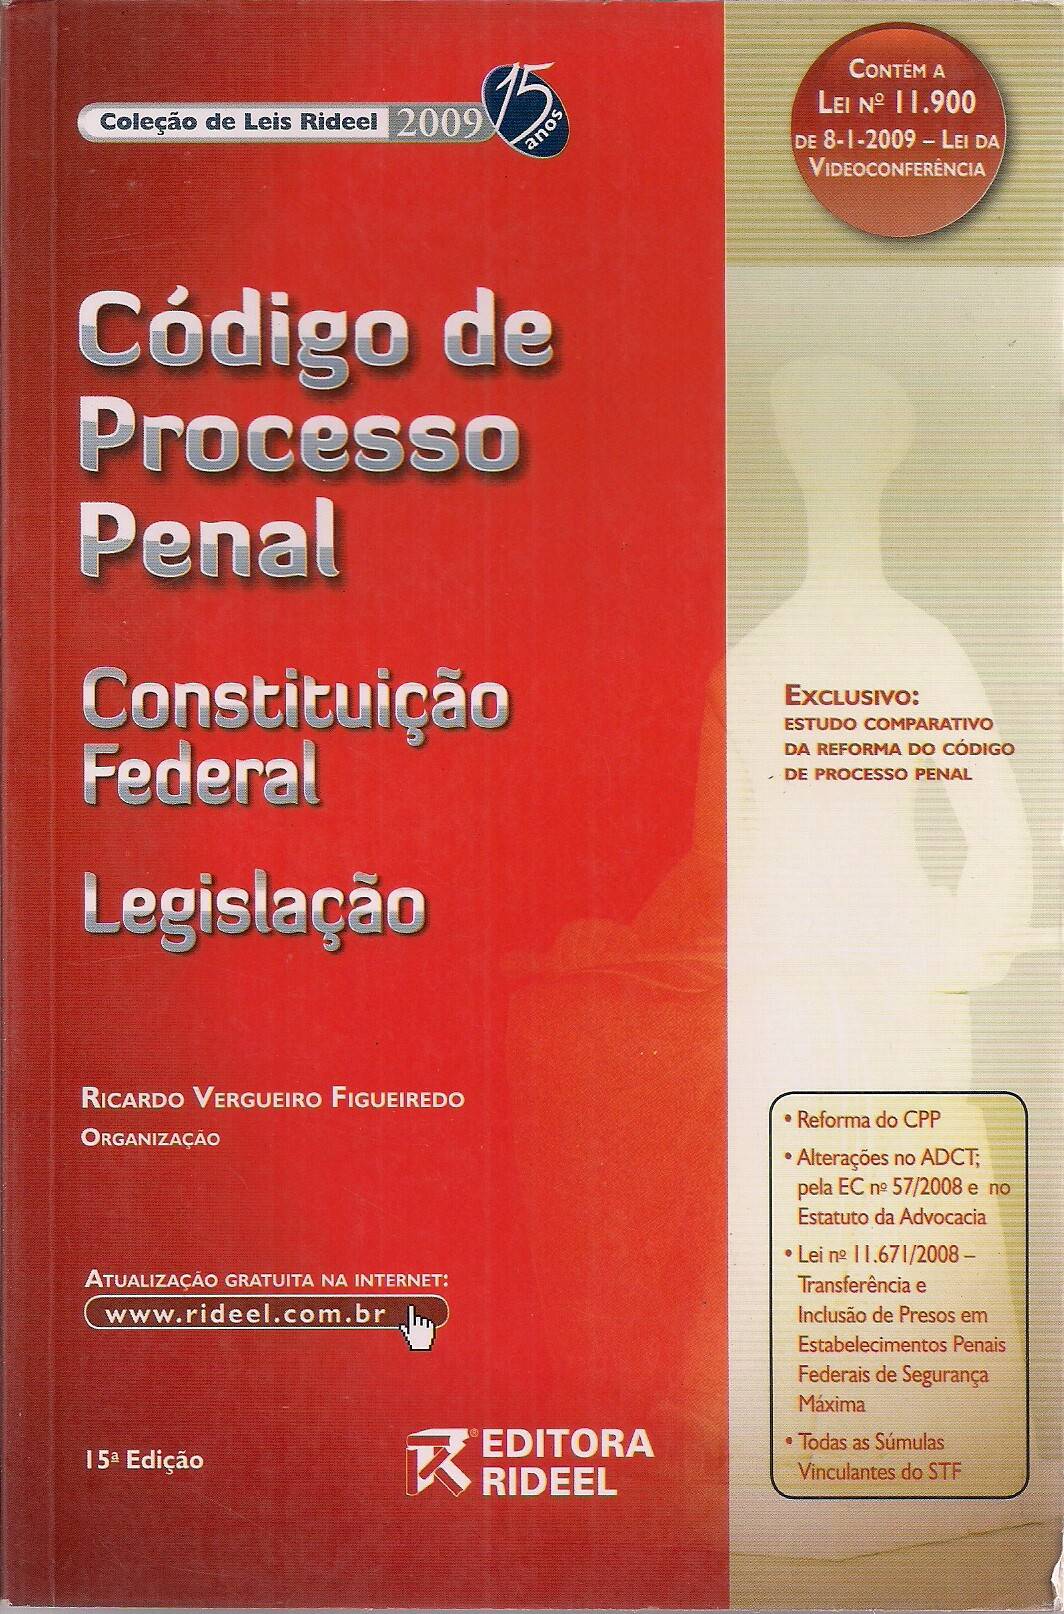 Foto 1 - Código de Processo Penal- Constituição Federal Legislação